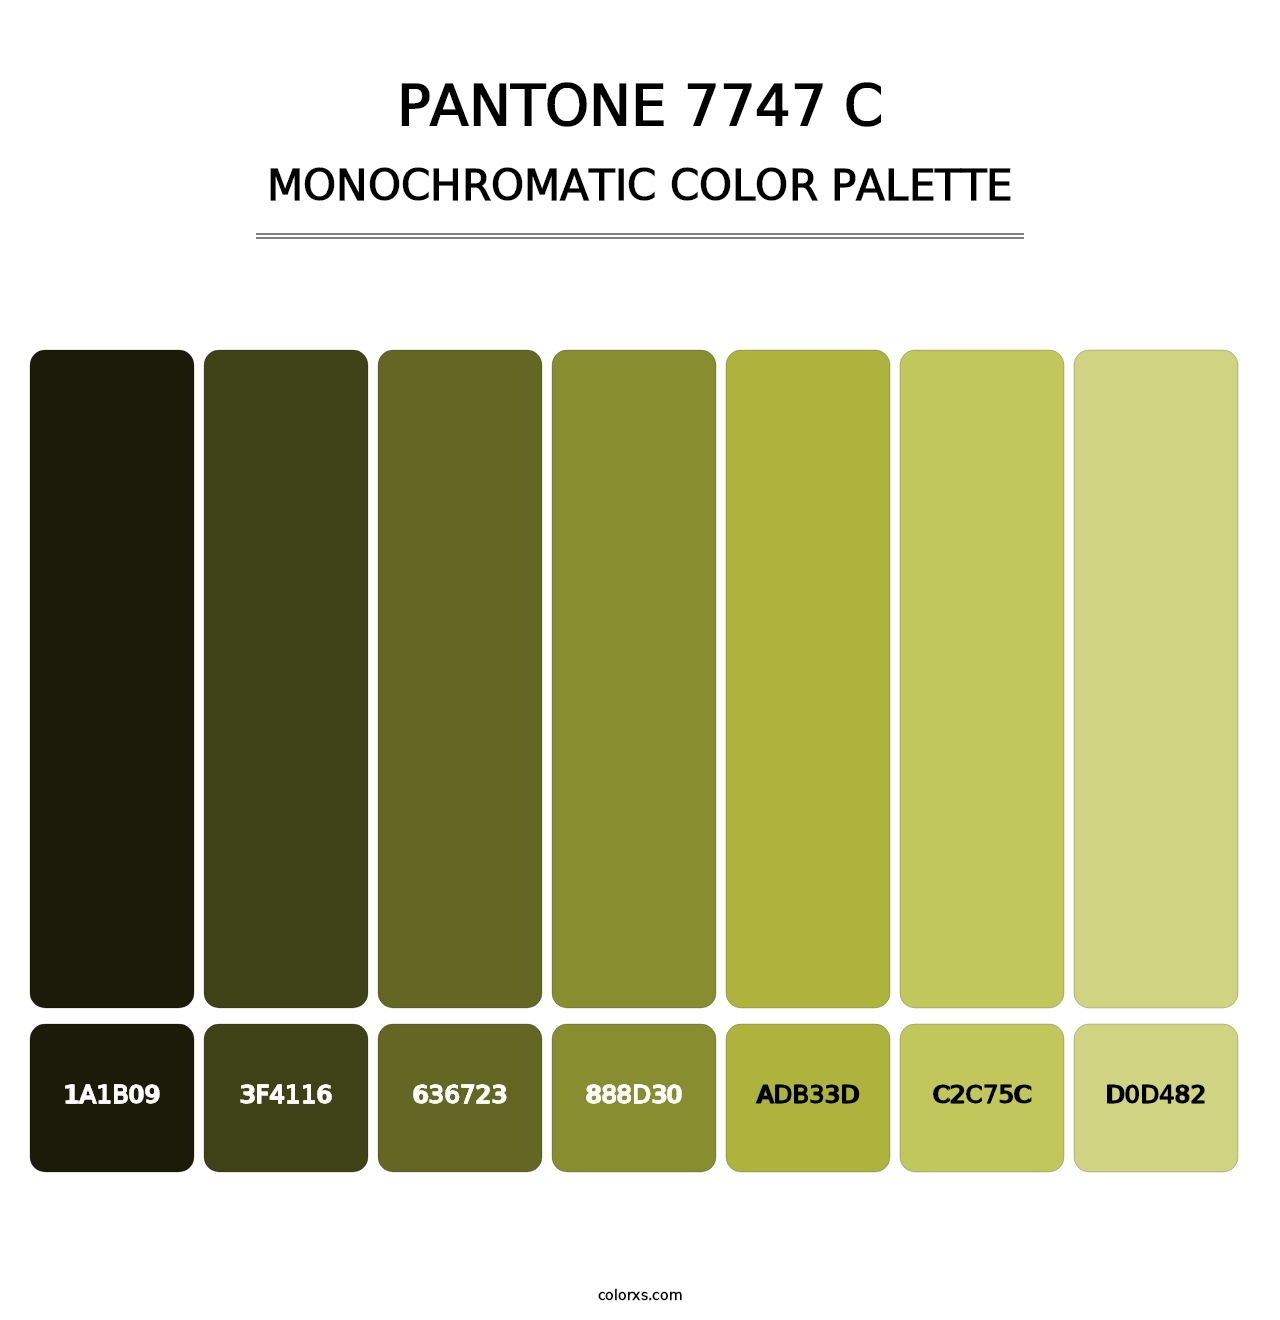 PANTONE 7747 C - Monochromatic Color Palette